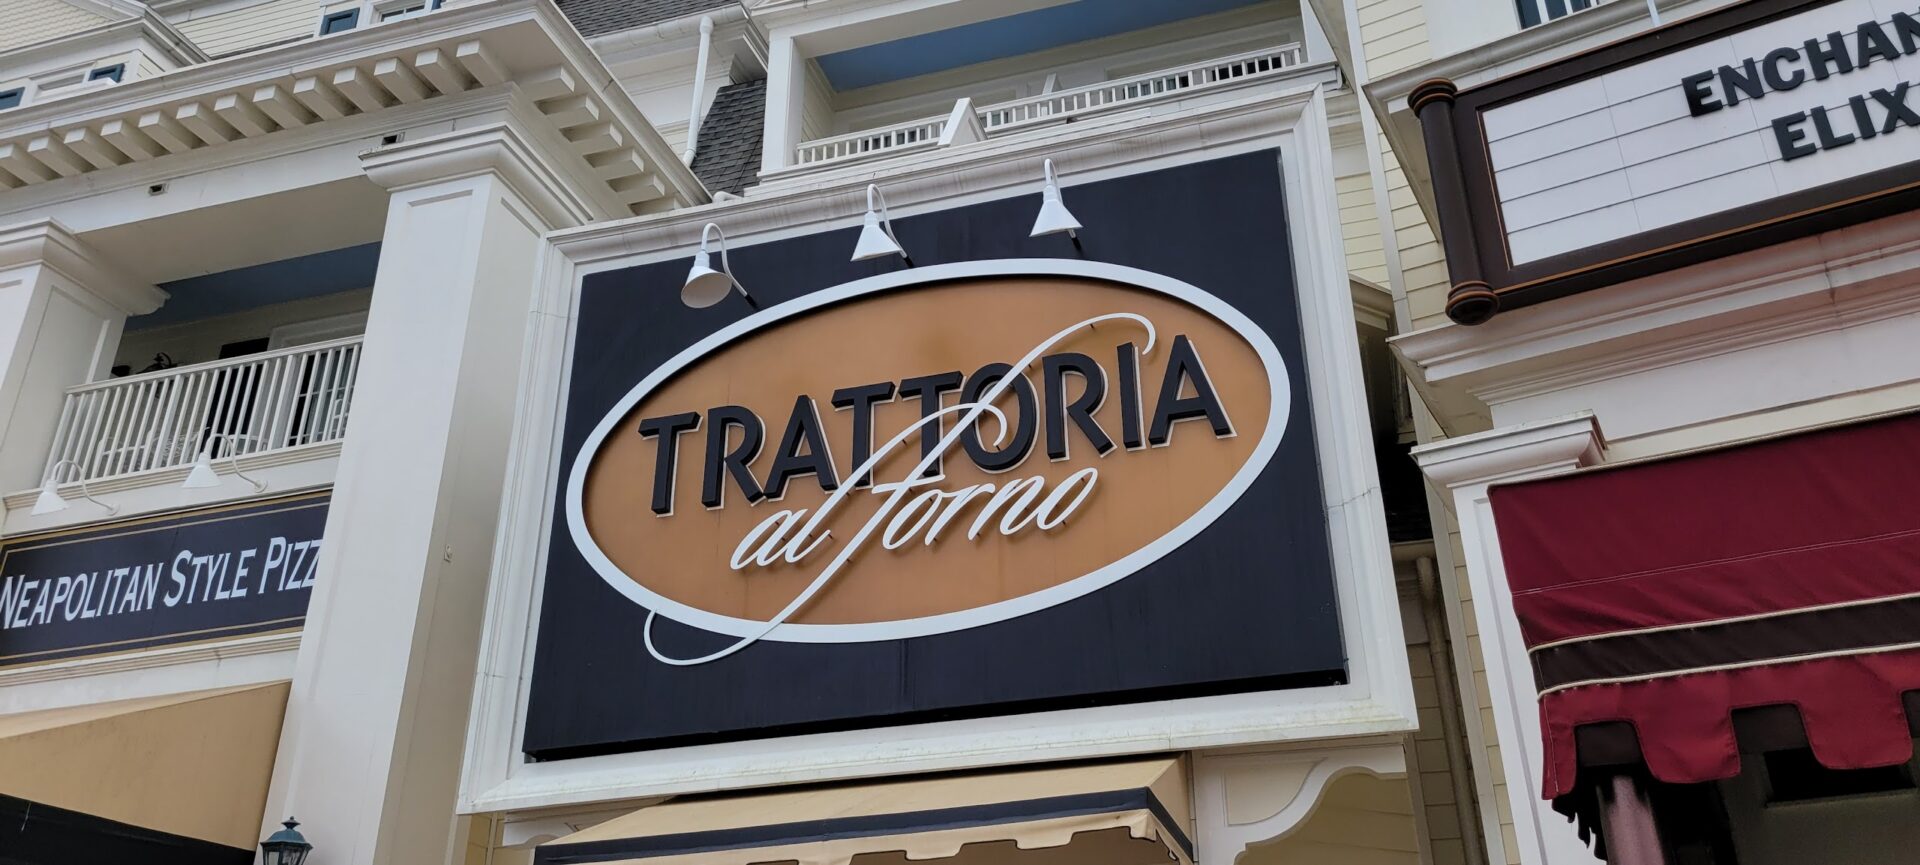 Trattoria al Forno Refurbishment Extended to Late June